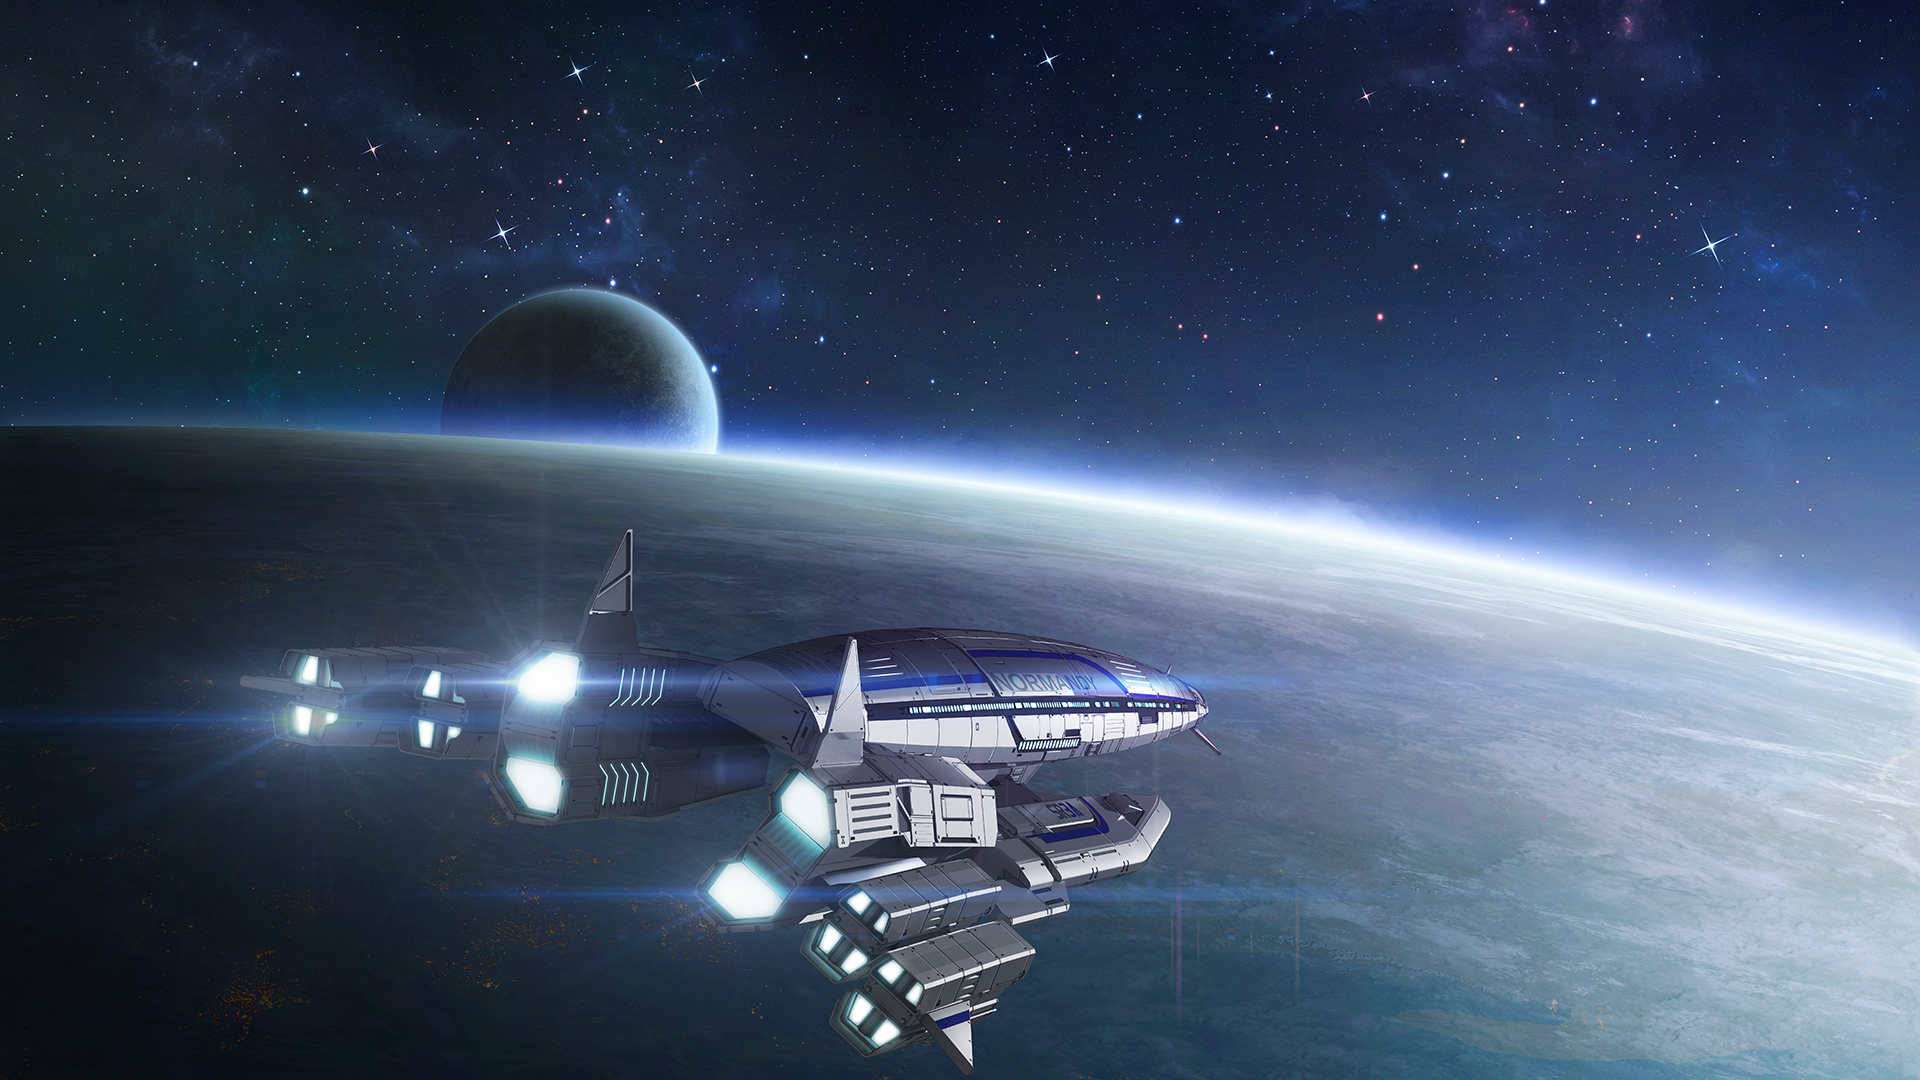 Mass Effect Hd Wallpaper - Mass Effect Normandy Sr 3 , HD Wallpaper & Backgrounds